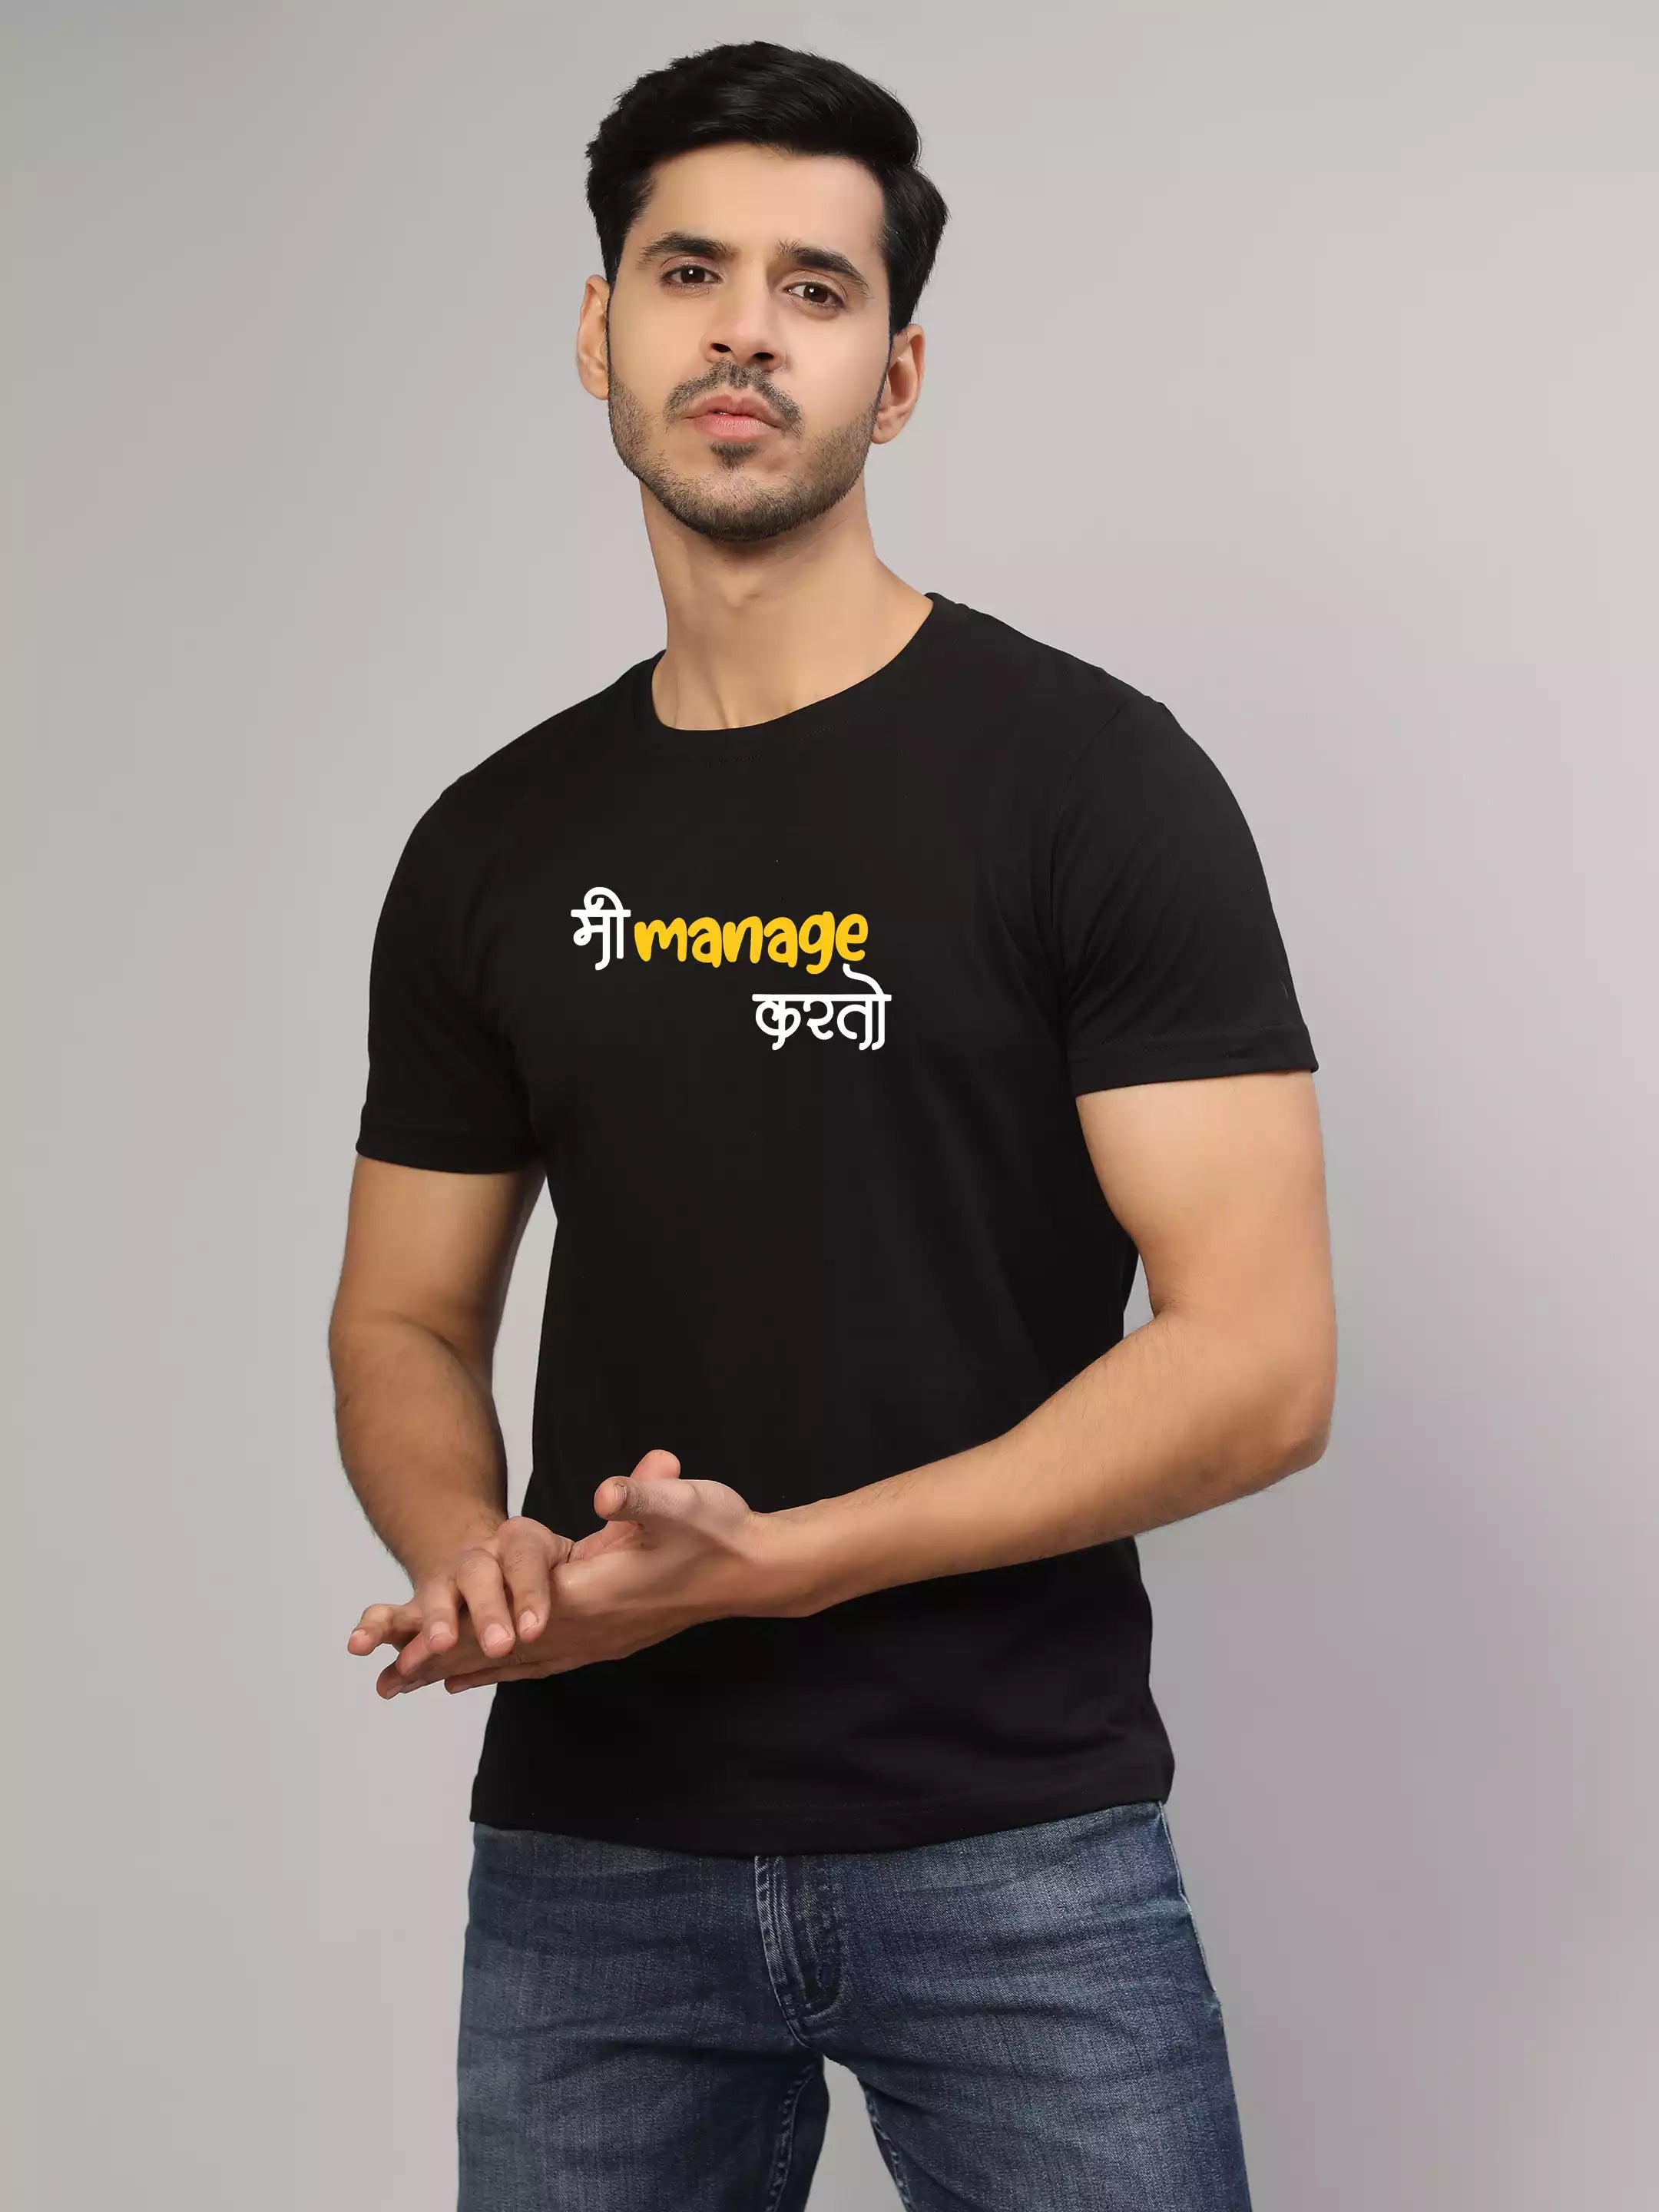 Me Manage Karto - Sukhiaatma Unisex Marathi Graphic Printed  Black T-shirt